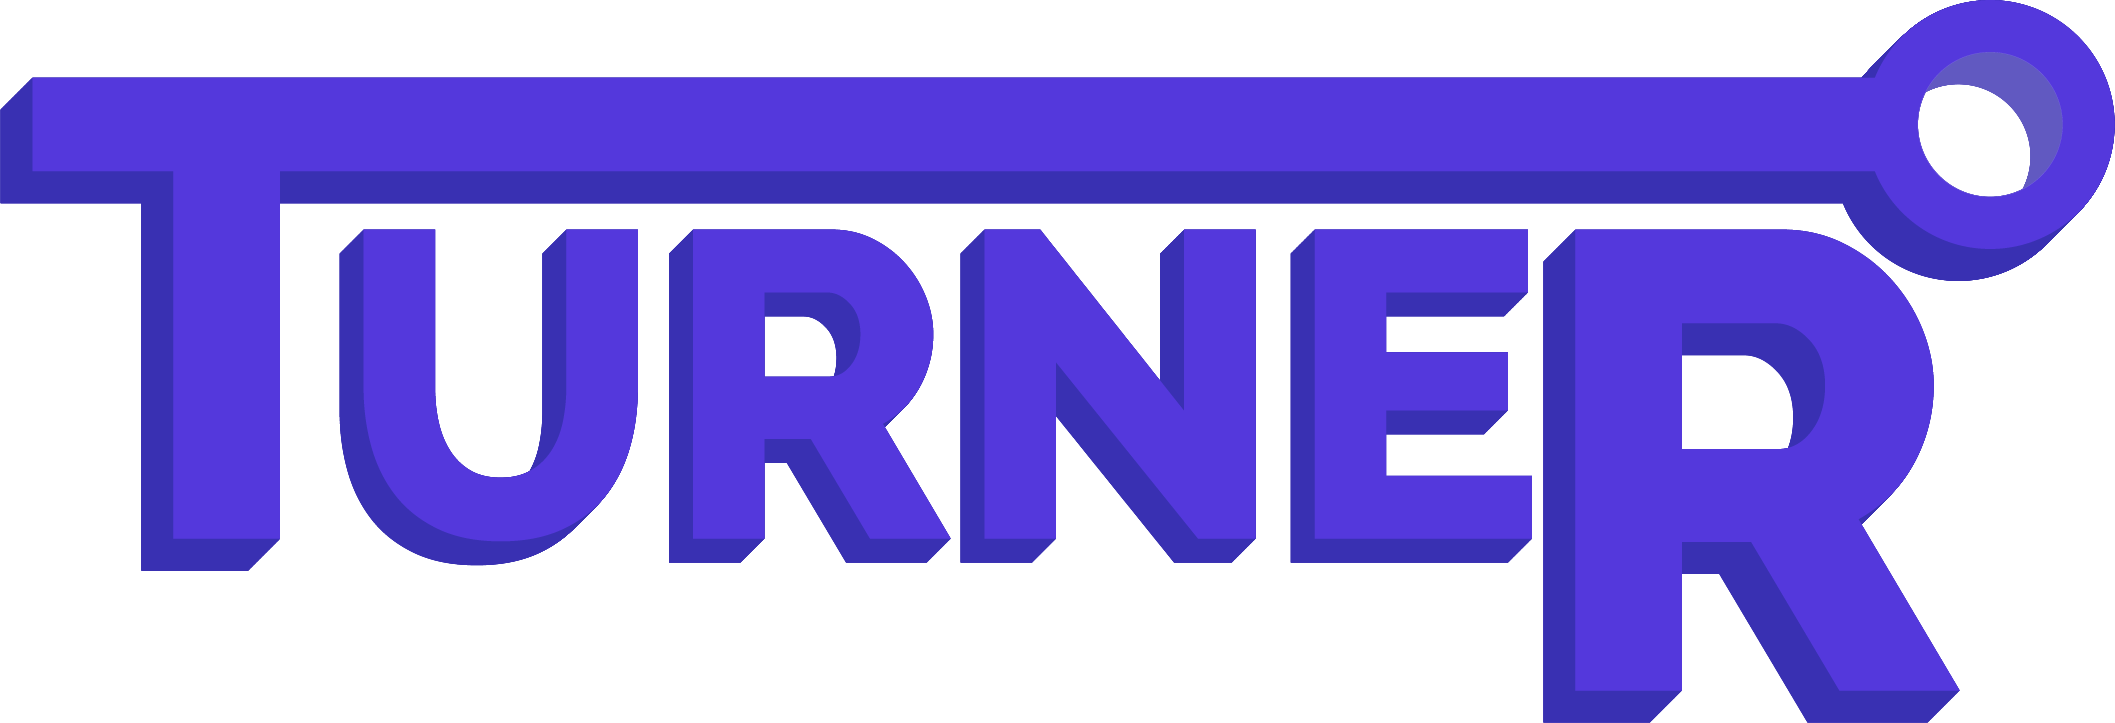 Logo du navigateur de recherches